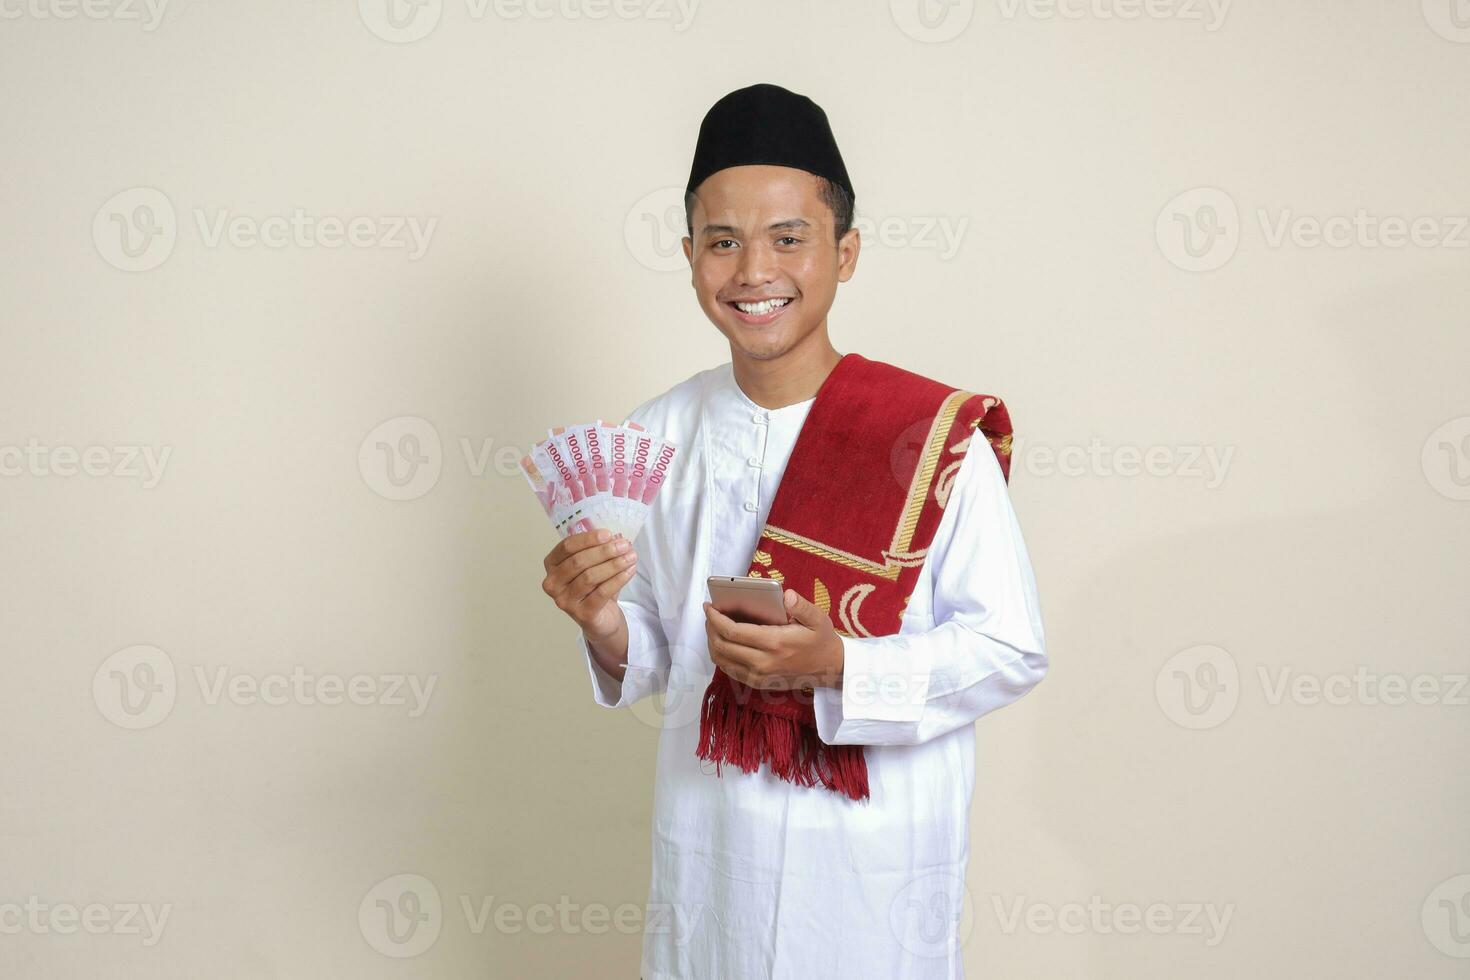 porträtt av attraktiv asiatisk muslim man i vit skjorta som visar ett hundra tusen rupiah medan använder sig av mobil telefon. finansiell och besparingar begrepp. isolerat bild på grå bakgrund foto